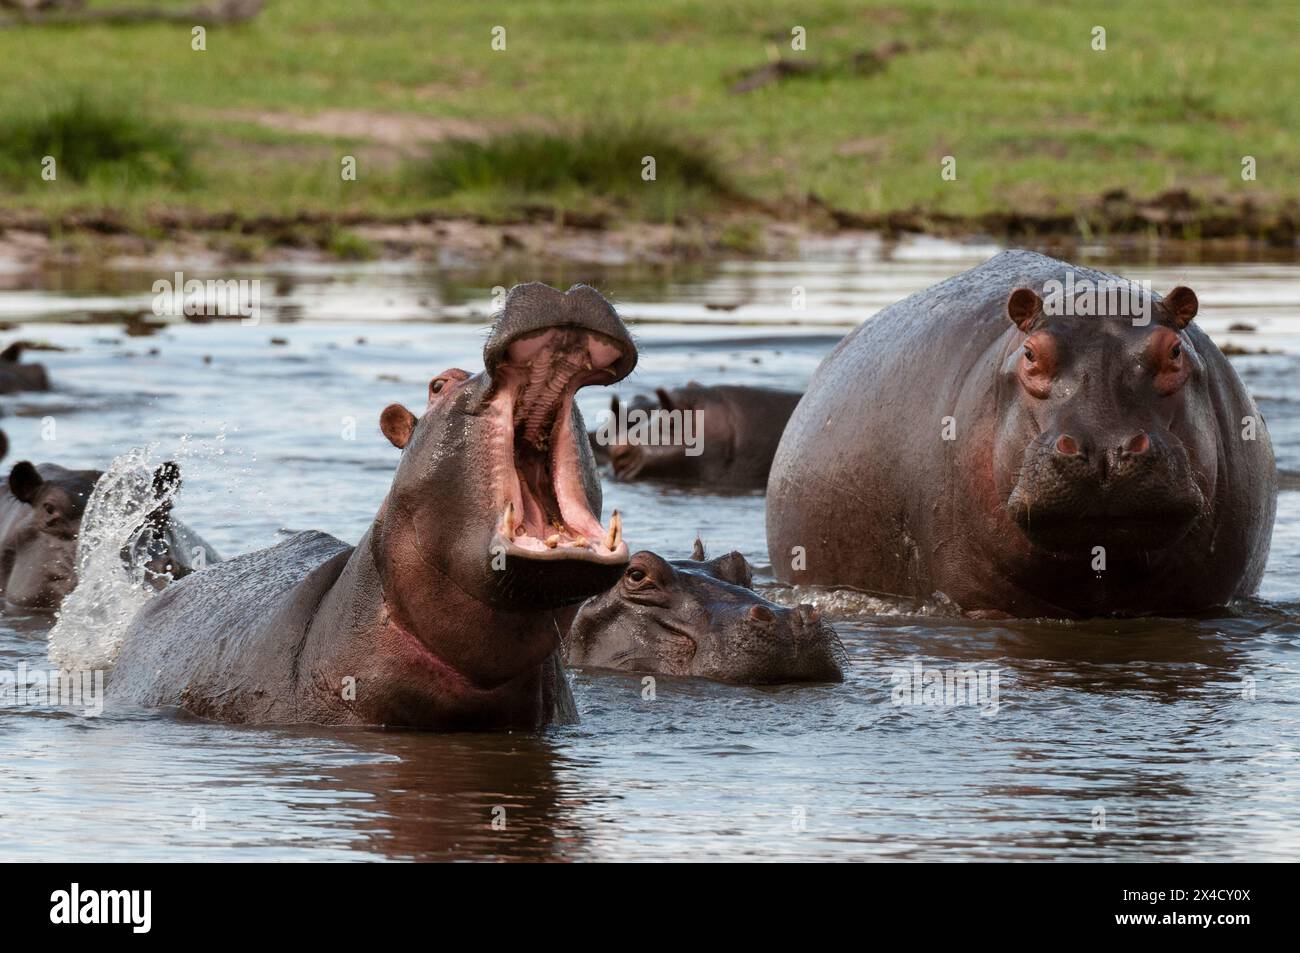 Ippopotami, Ippopotamo anfibio, in una piscina d'acqua. Uno sta mostrando un comportamento territoriale. Zona di concessione di Khwai, Okavango, Botswana. Foto Stock